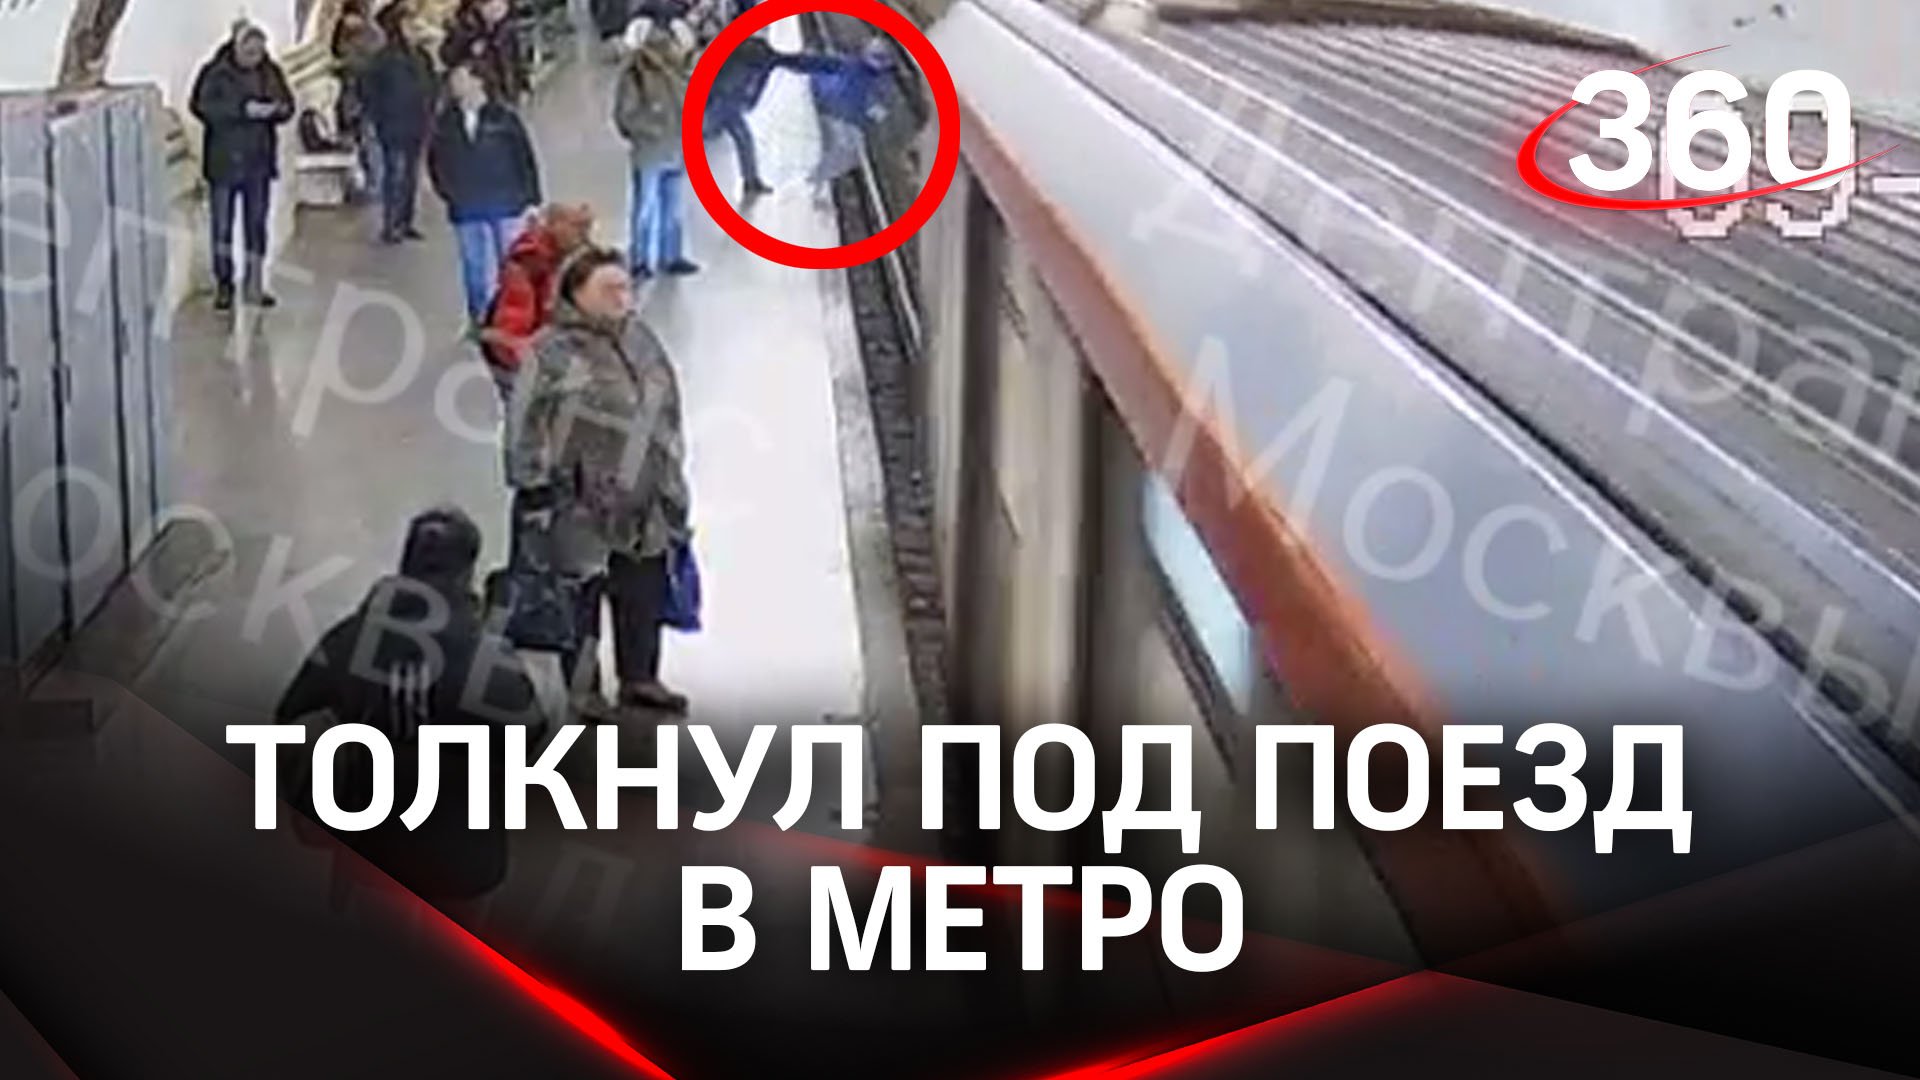 Мужчина столкнул под поезд. Столкнул под поезд в метро. Подростка столкнули под поезд. Толкнул на рельсы в метро. Поезд Путина.